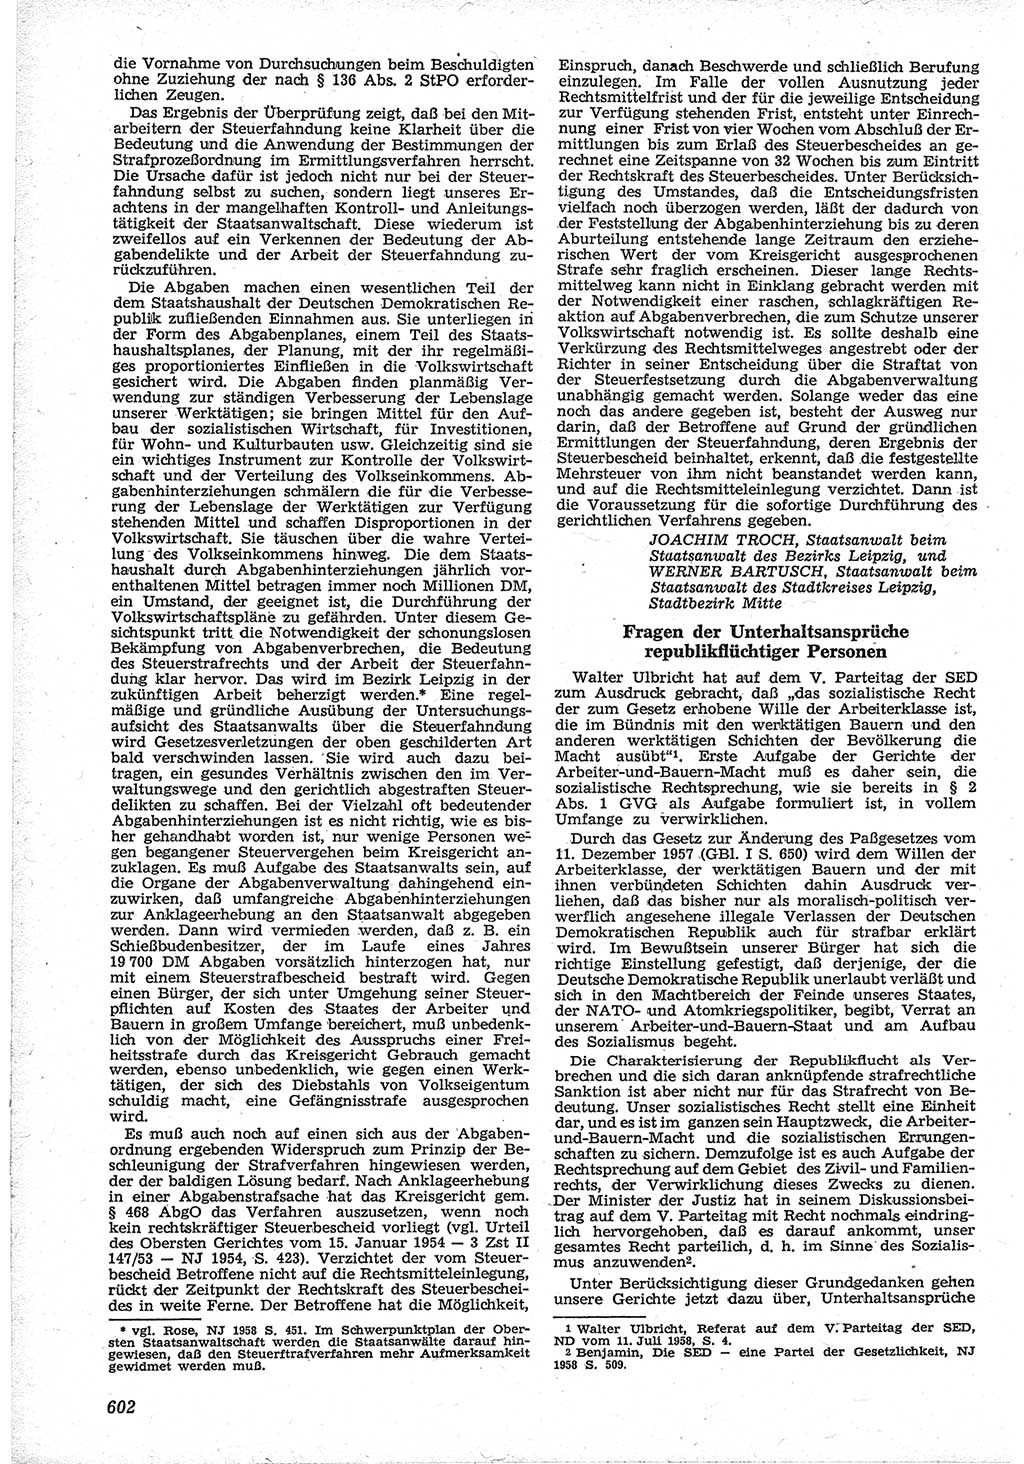 Neue Justiz (NJ), Zeitschrift für Recht und Rechtswissenschaft [Deutsche Demokratische Republik (DDR)], 12. Jahrgang 1958, Seite 602 (NJ DDR 1958, S. 602)